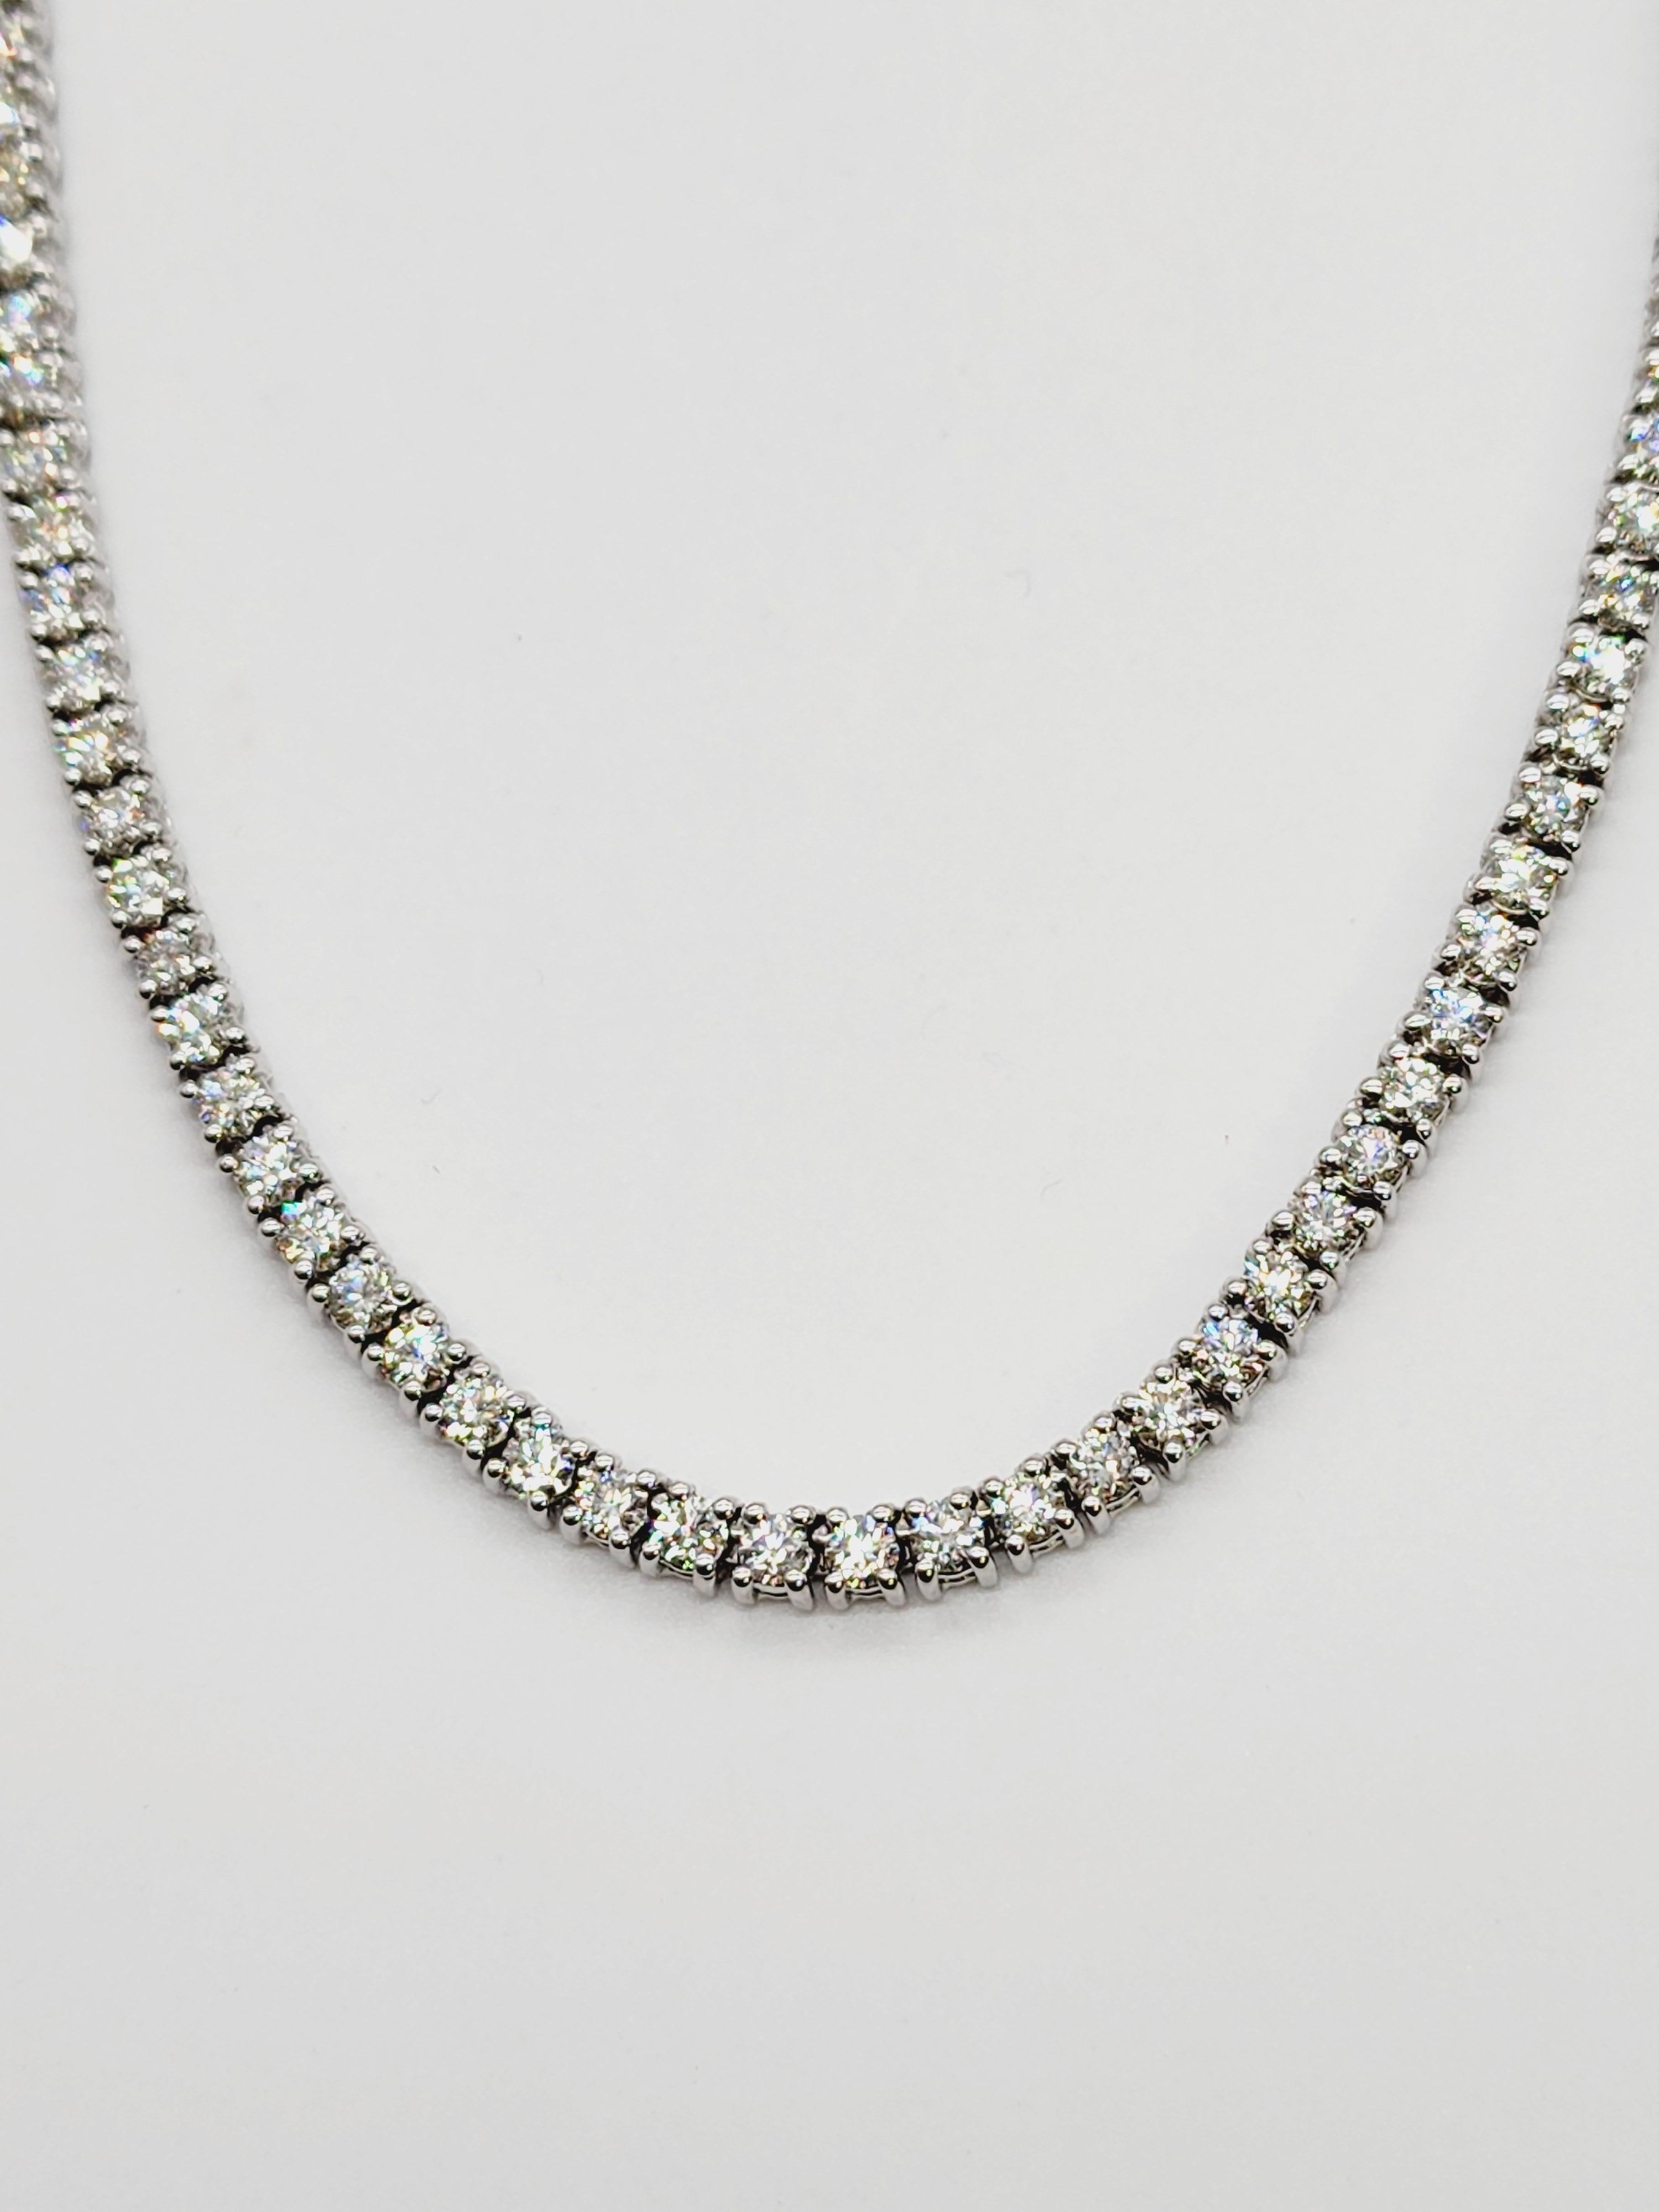 5.85 Carats Mini Diamond Tennis Necklace Chain 14 Karat White Gold 18'' (Collier de tennis en diamant) Neuf - En vente à Great Neck, NY